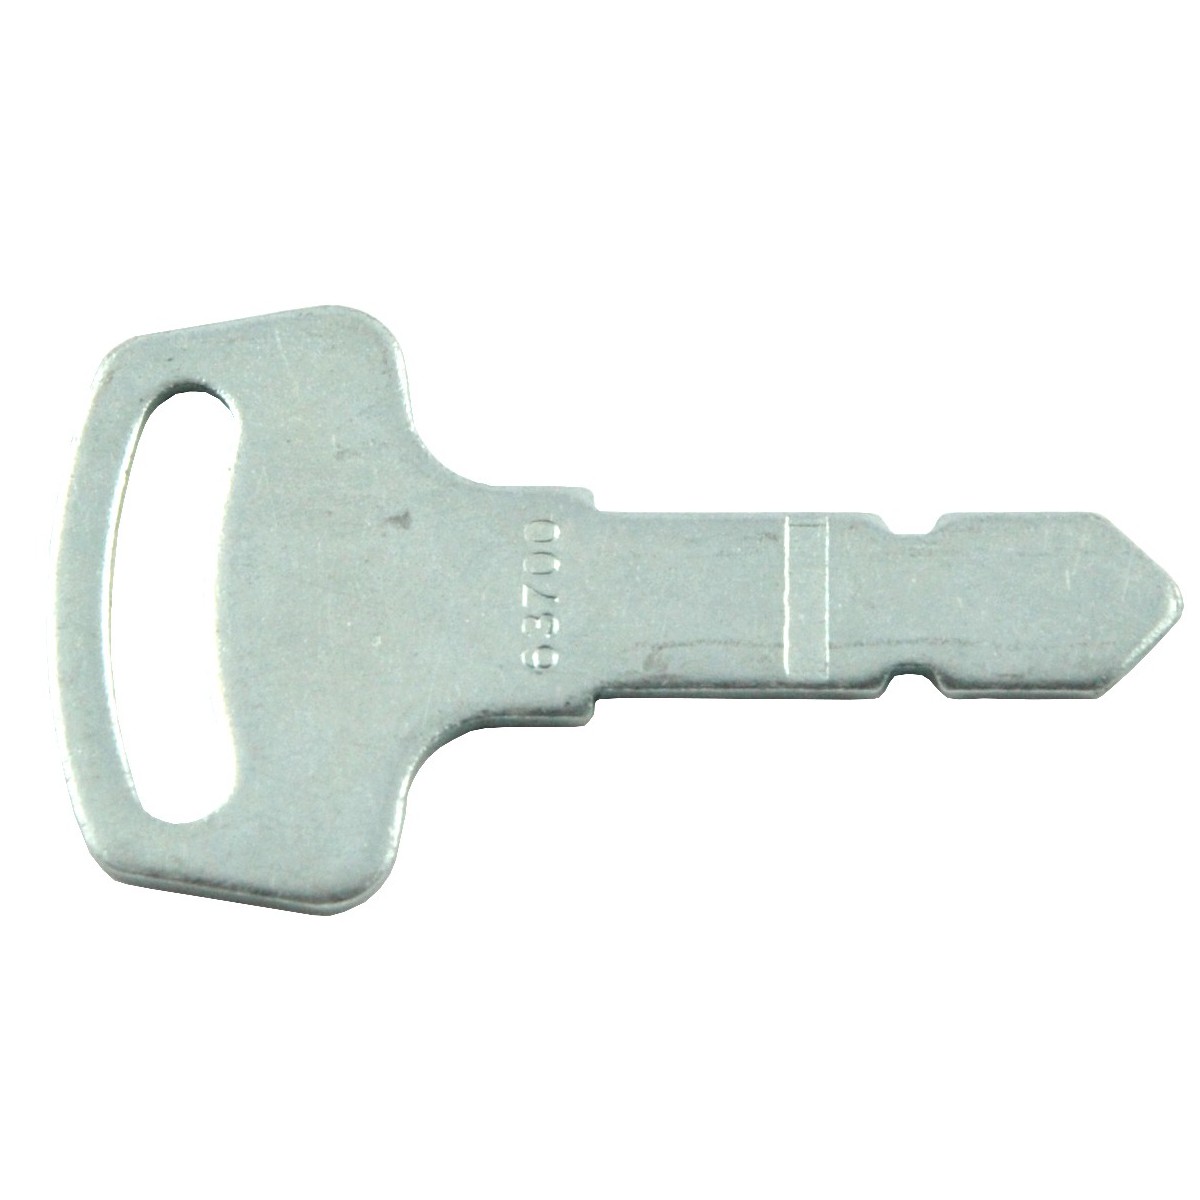 Key for the ignition switch Kubota Case New Holland 15248-63700